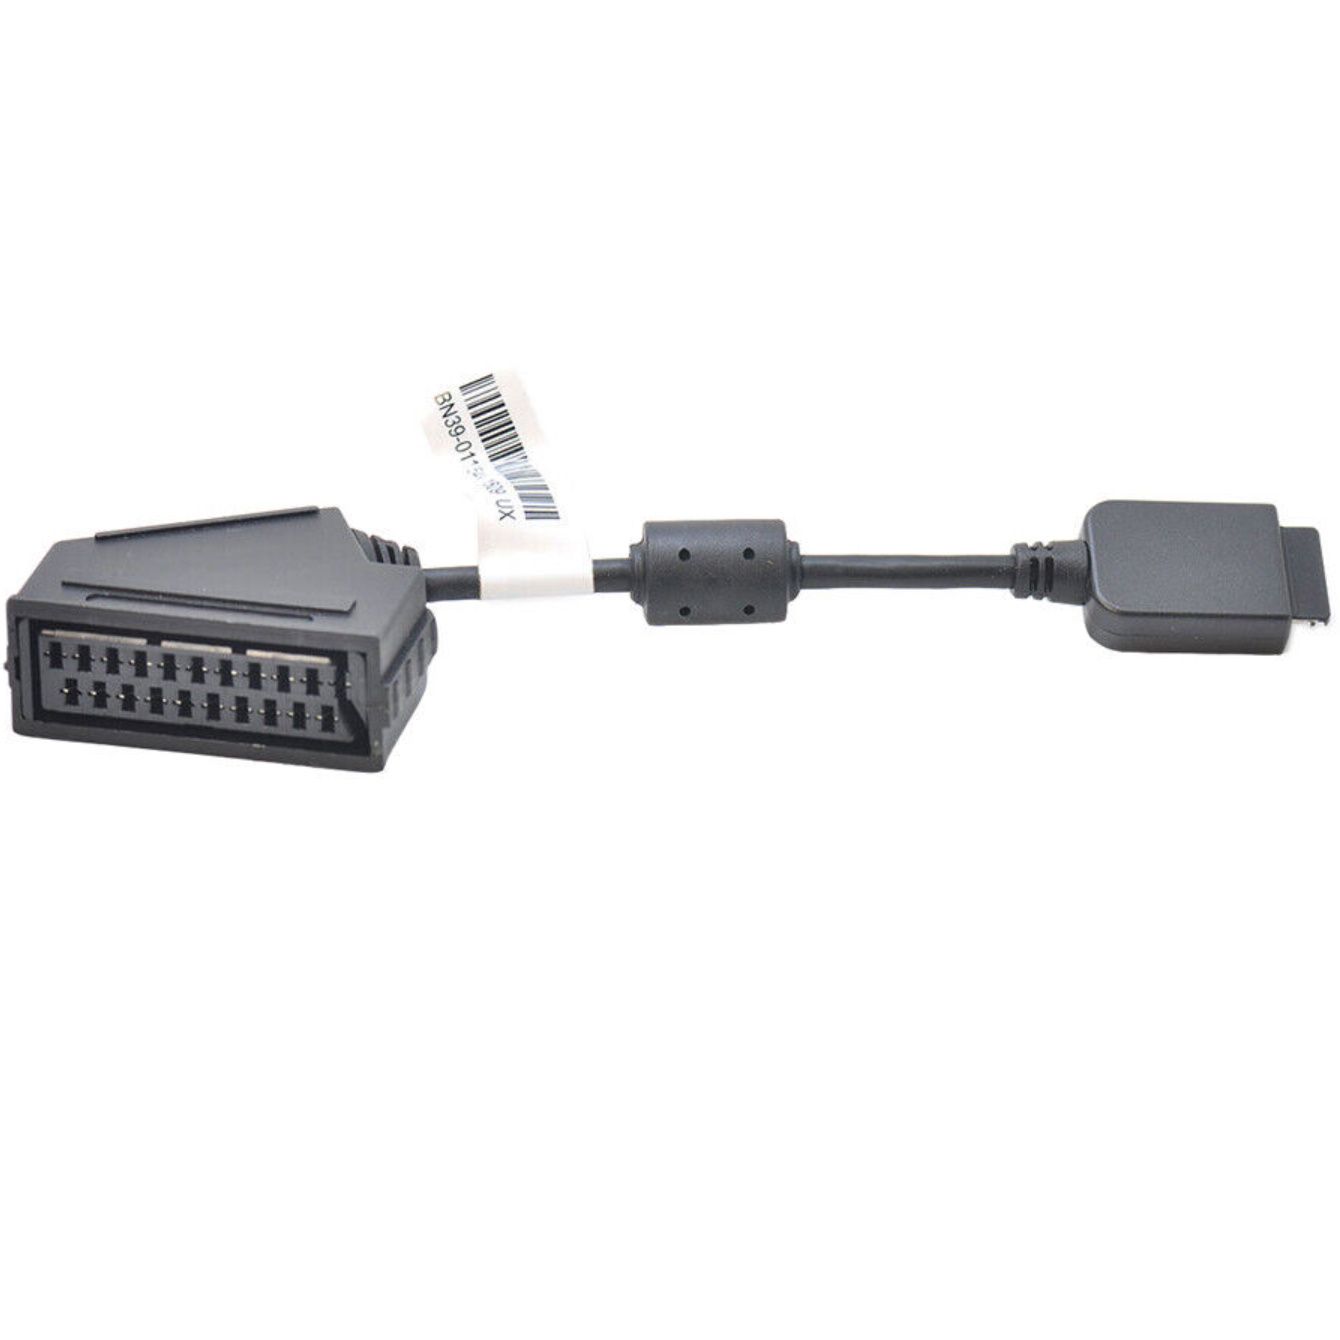 Samsung SCART bn39-01154a. Переходник SCART на HDMI для телевизора Samsung bn39-01154a,. Bn39-01154f. Переходник bn39-01154a. Скарт переходник для телевизора